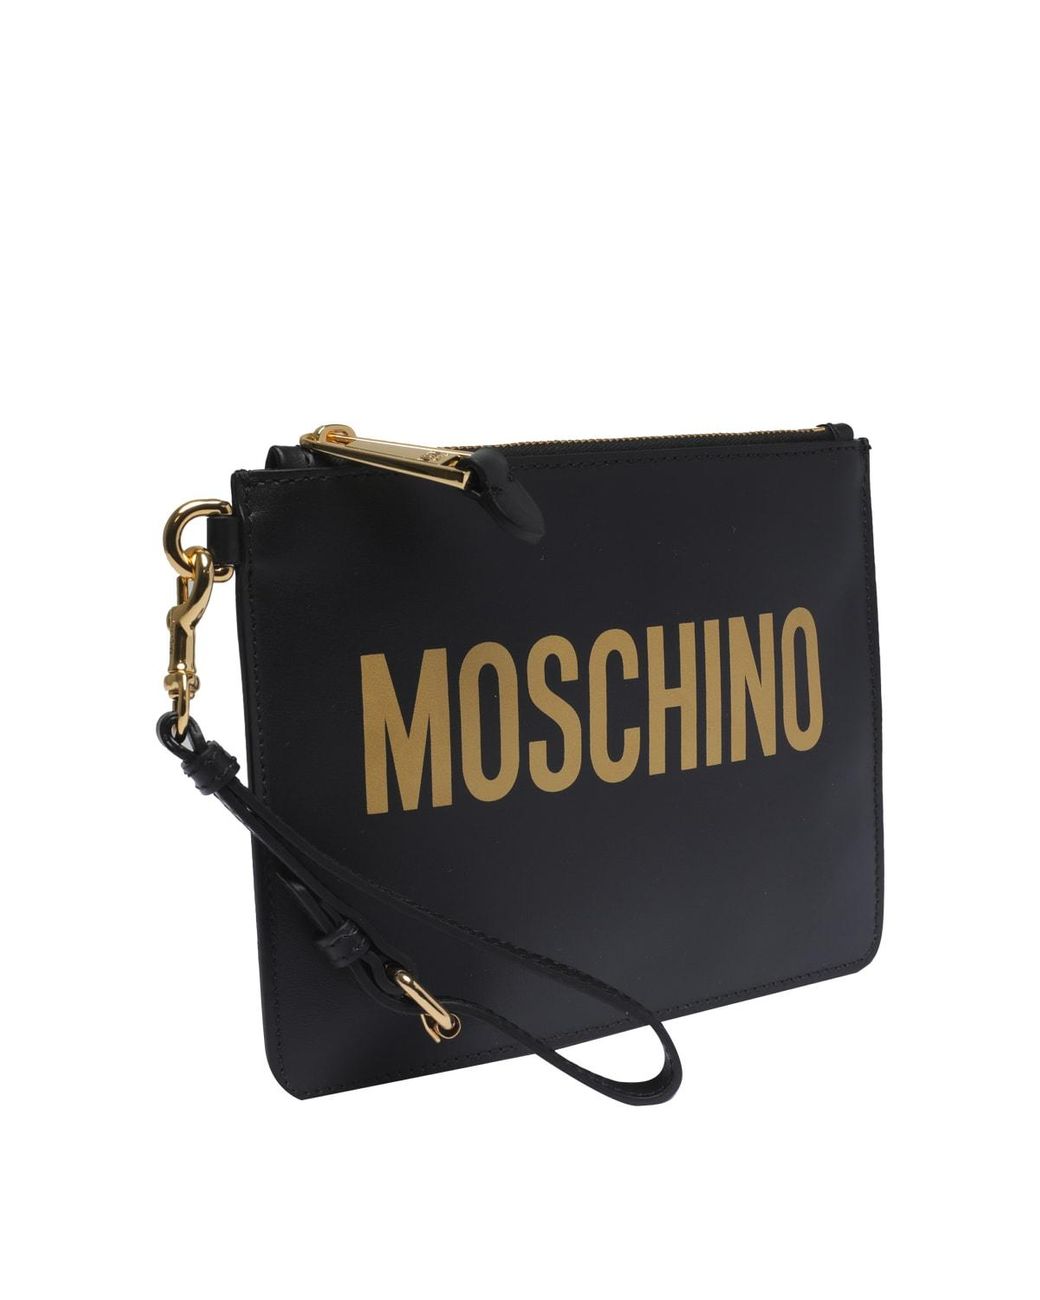 Moschino Logo Pochette in Black | Lyst